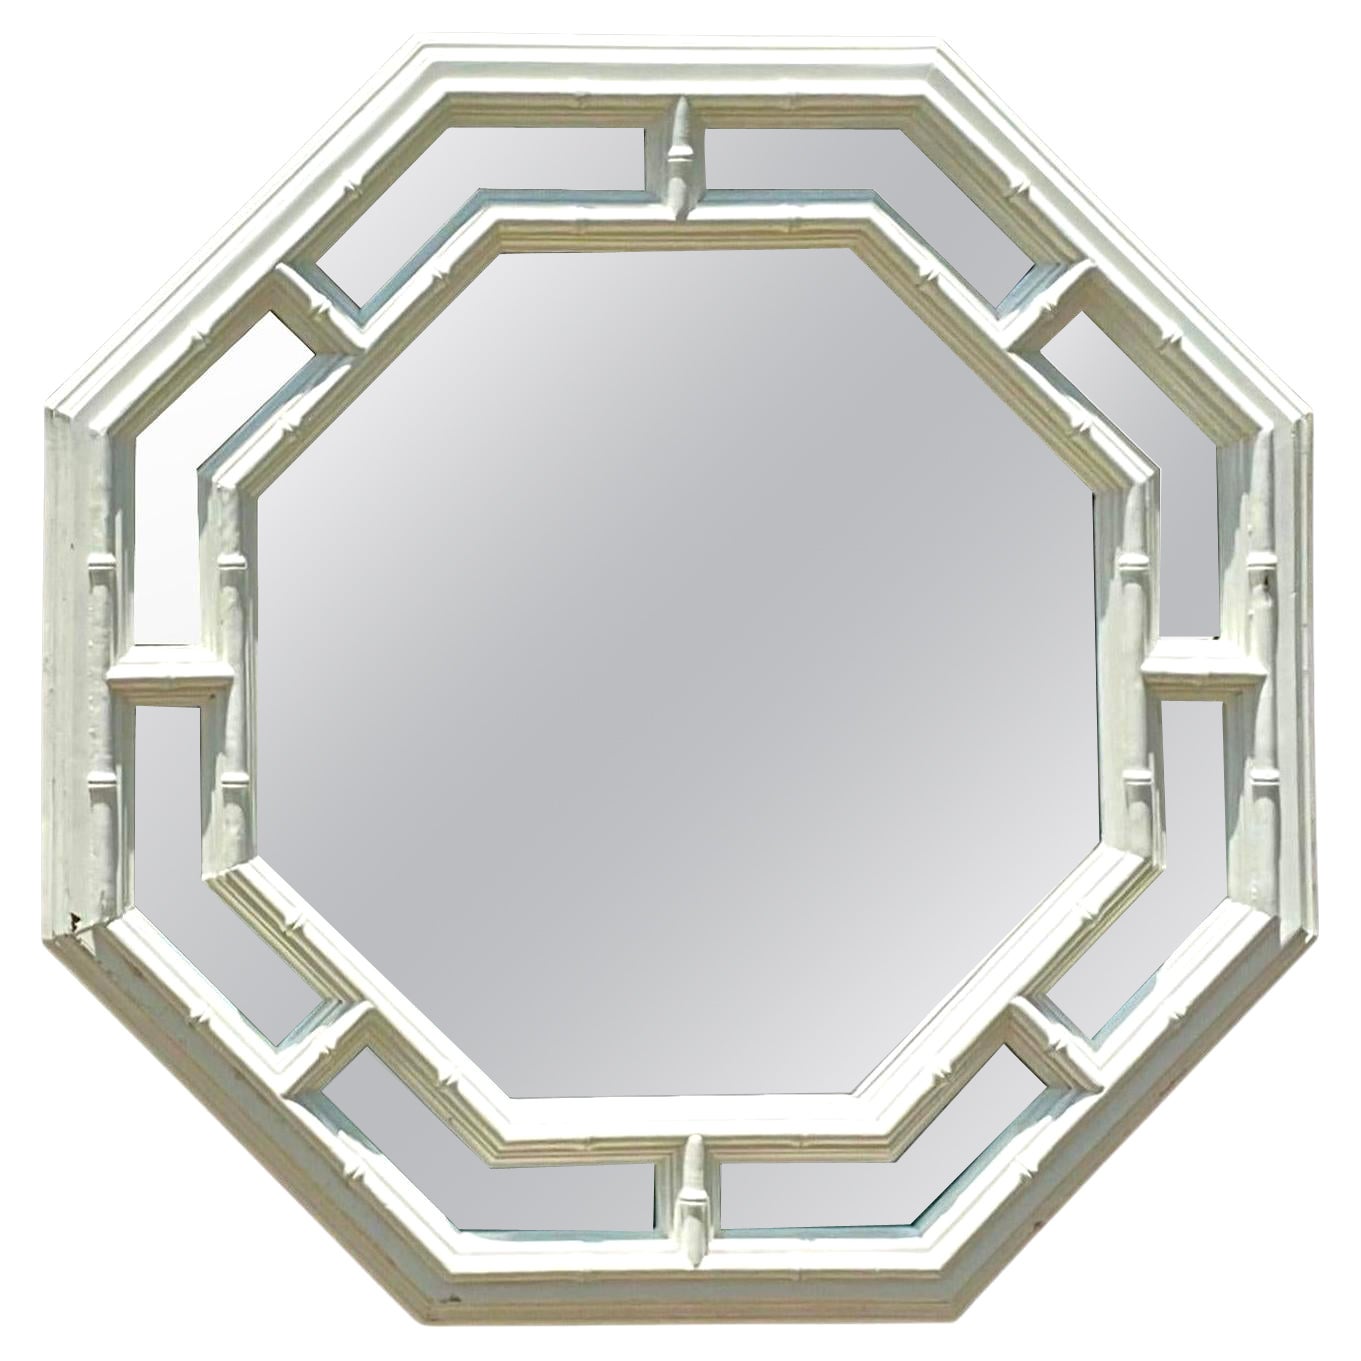 Vintage Coastal Lacquered Octagon Mirror